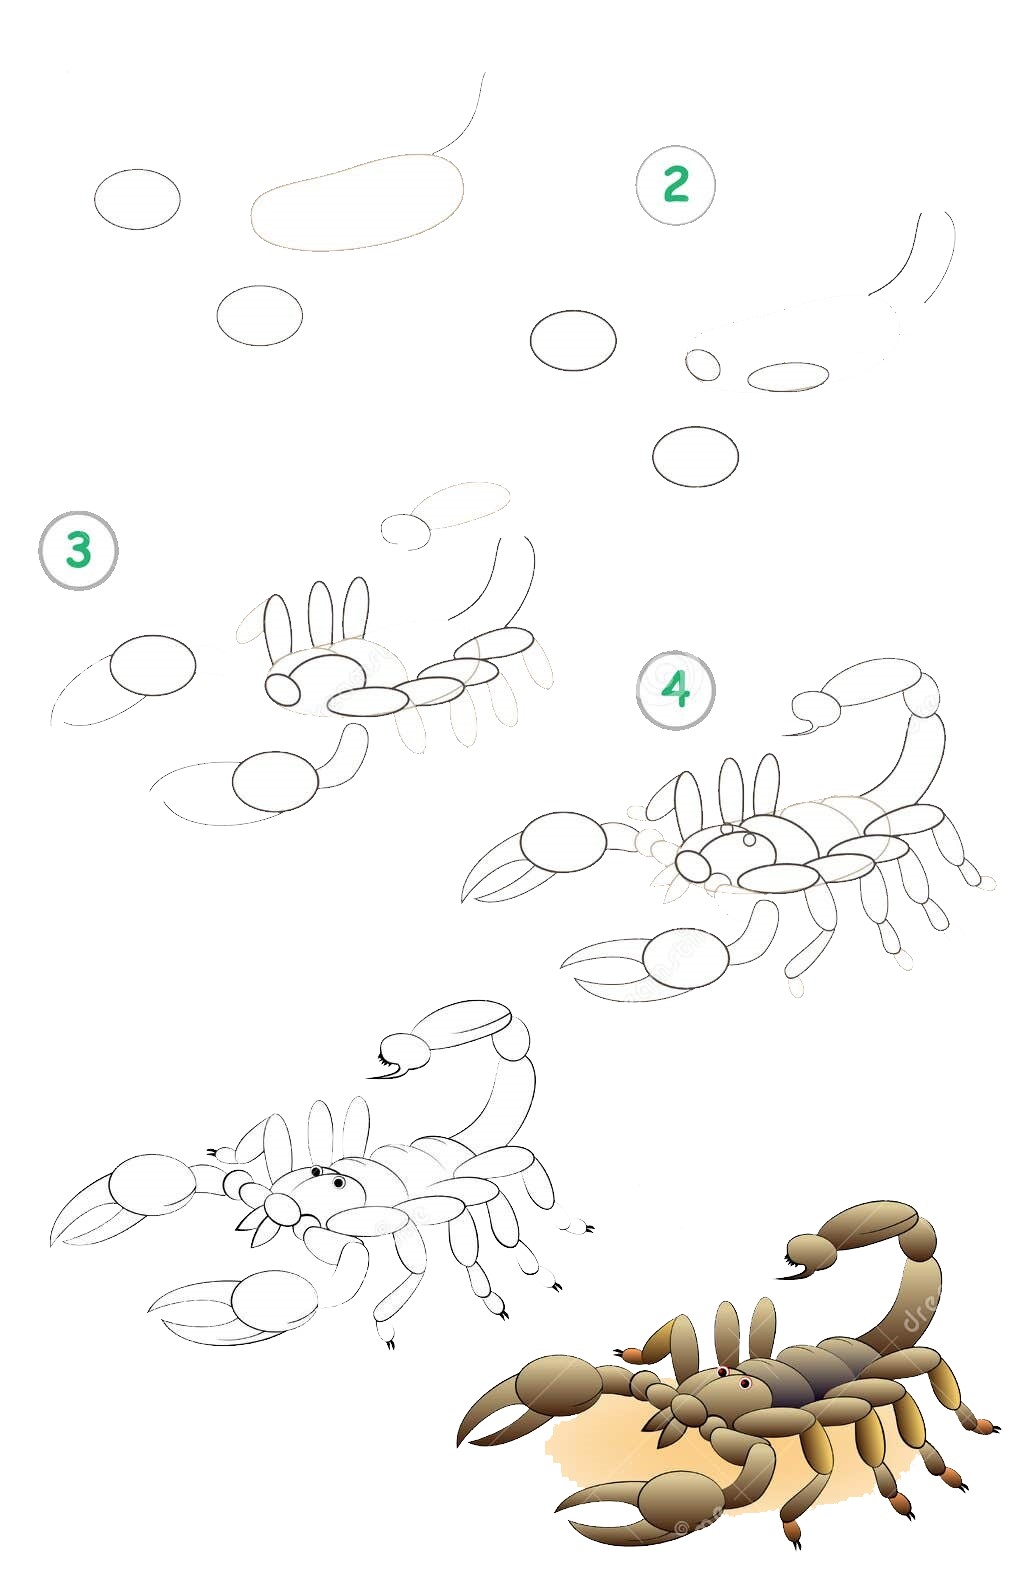 Skorpioni-Idee (19) zeichnen ideen